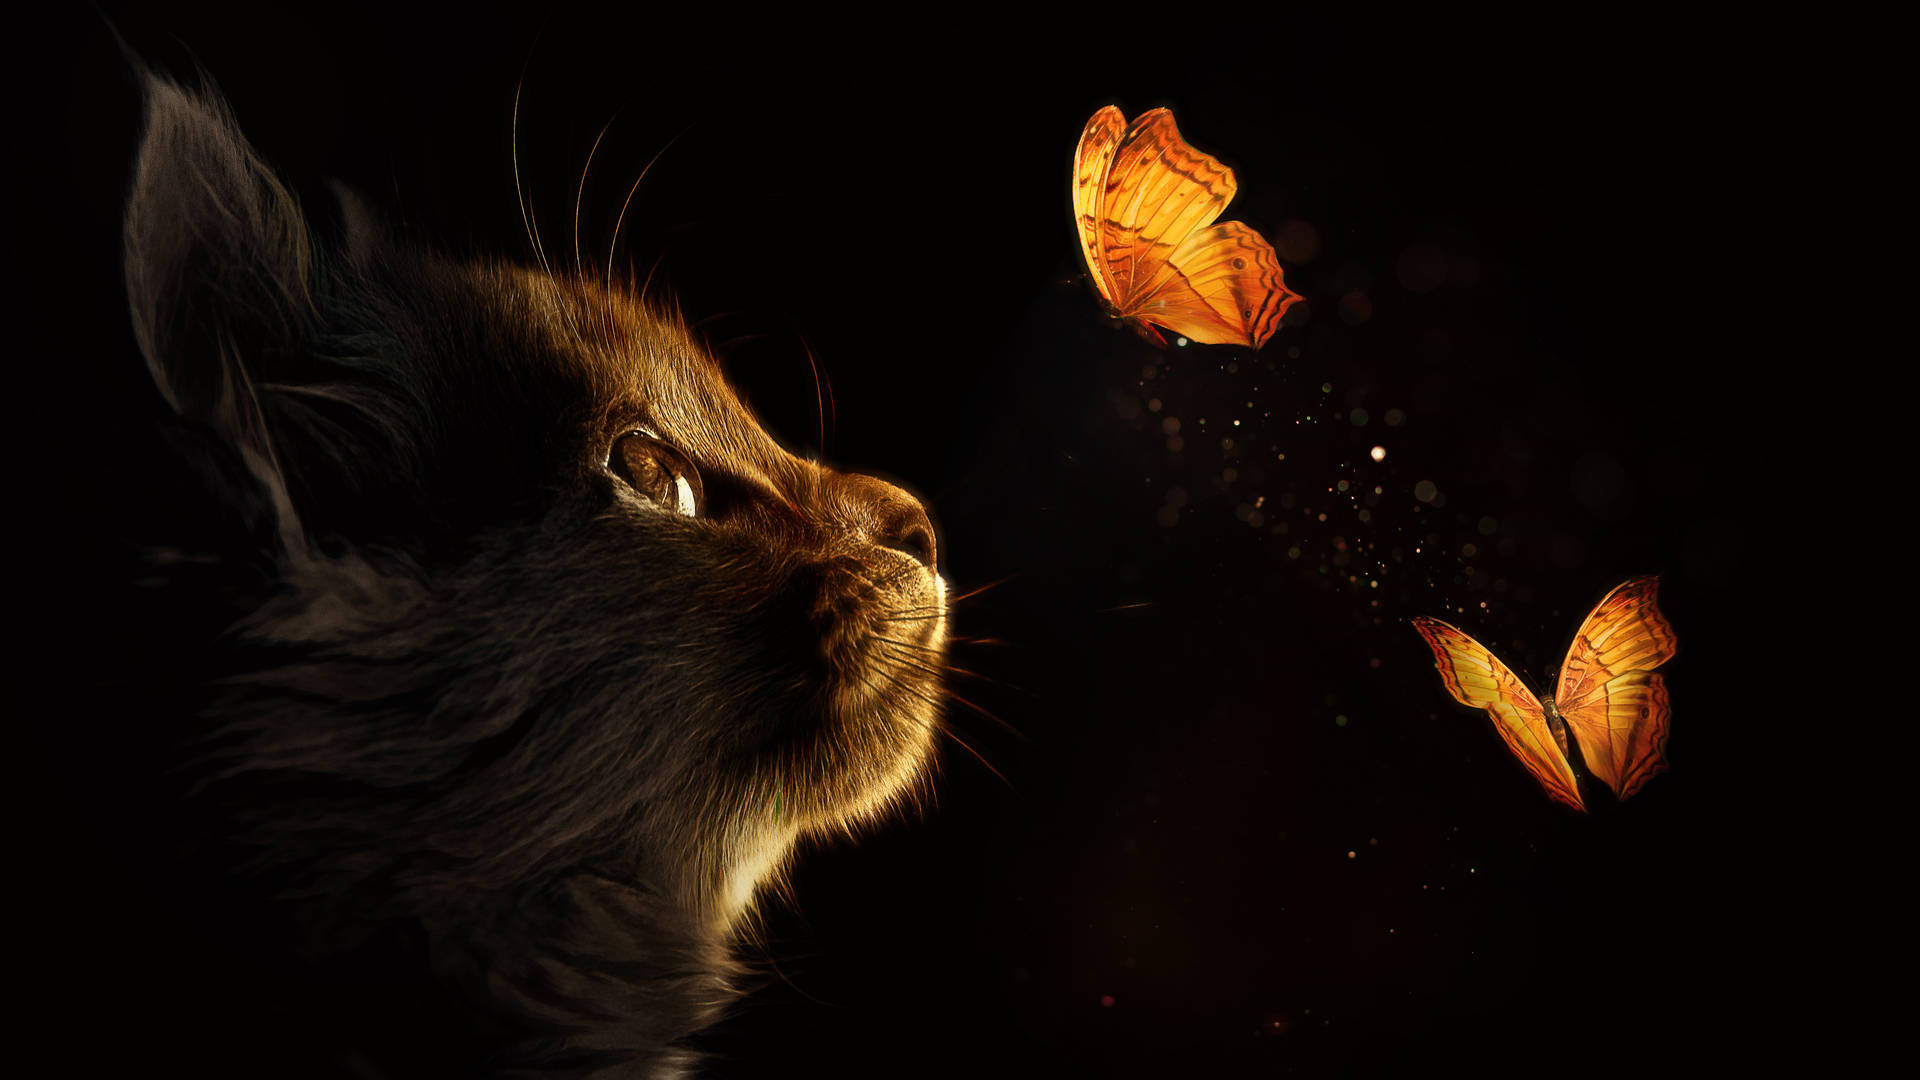 Caption: Mystical Black Art - Kitten Amidst Butterflies Background